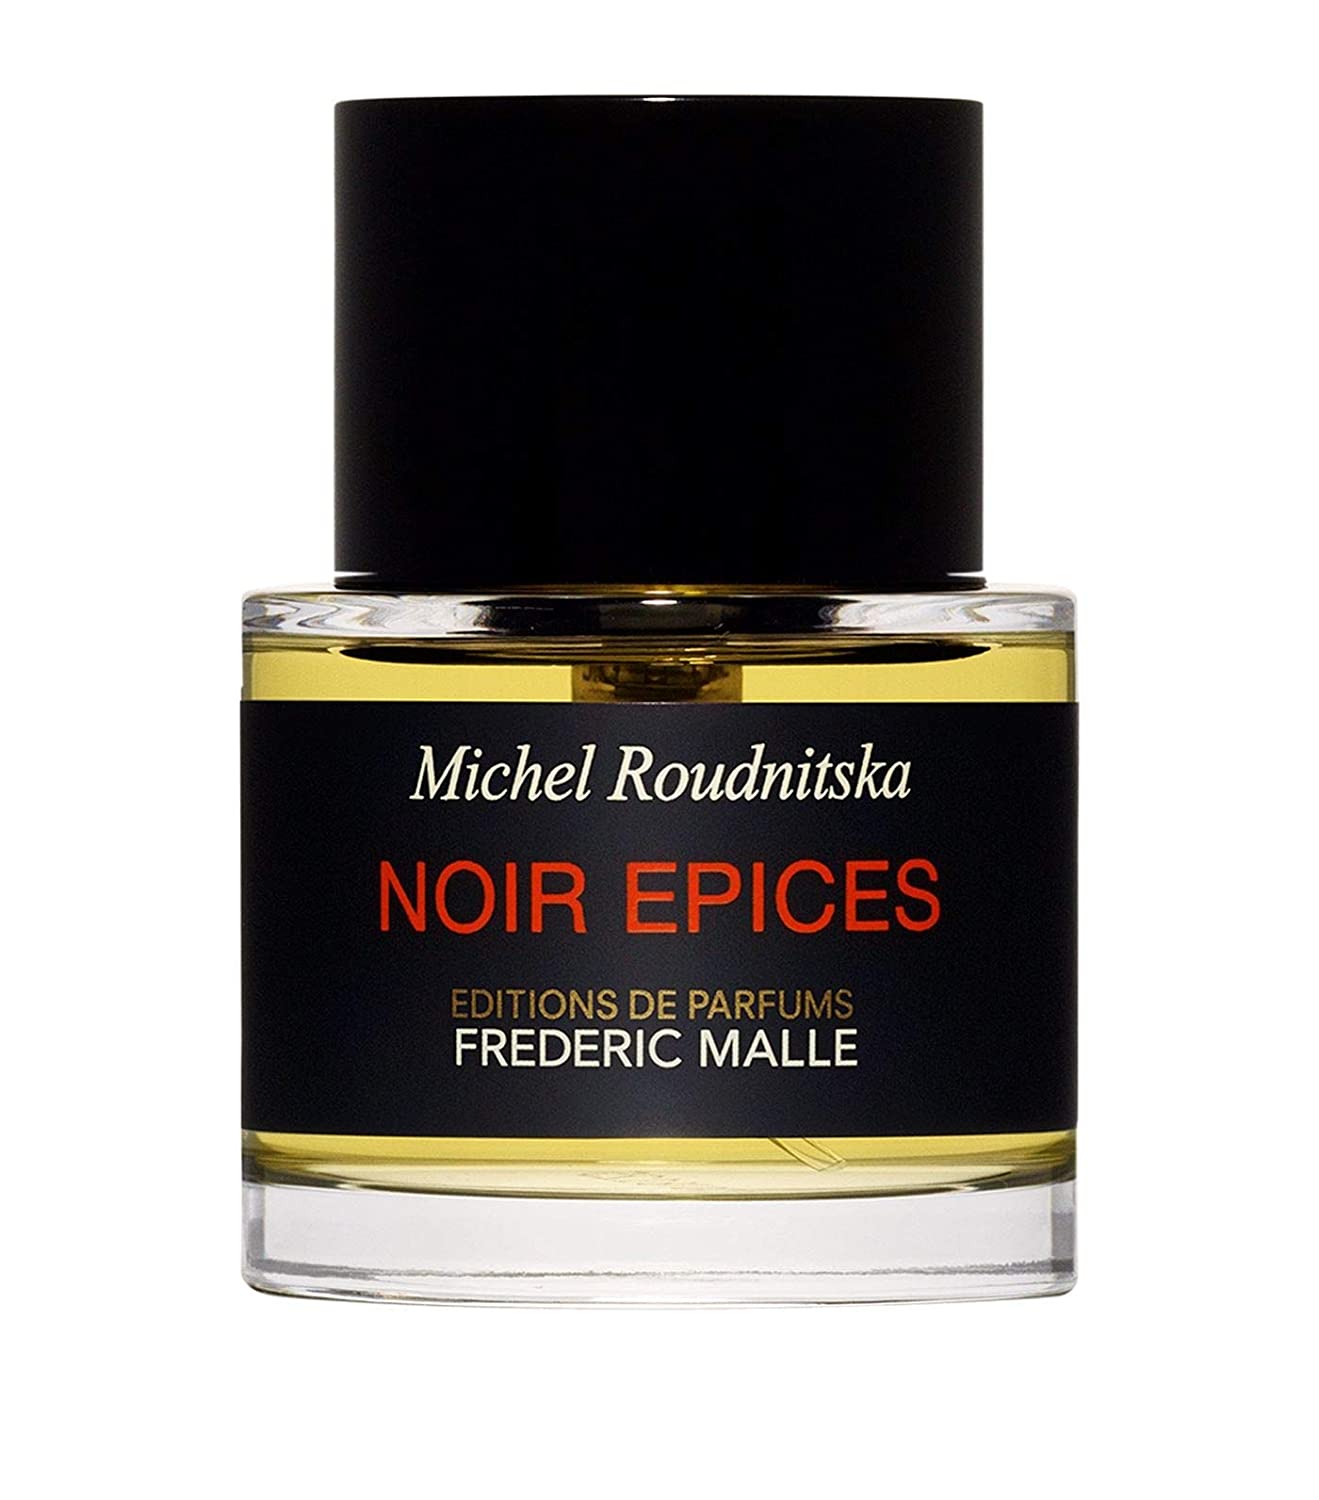 Editions de Parfums Frederic Malle - Noir Epices.